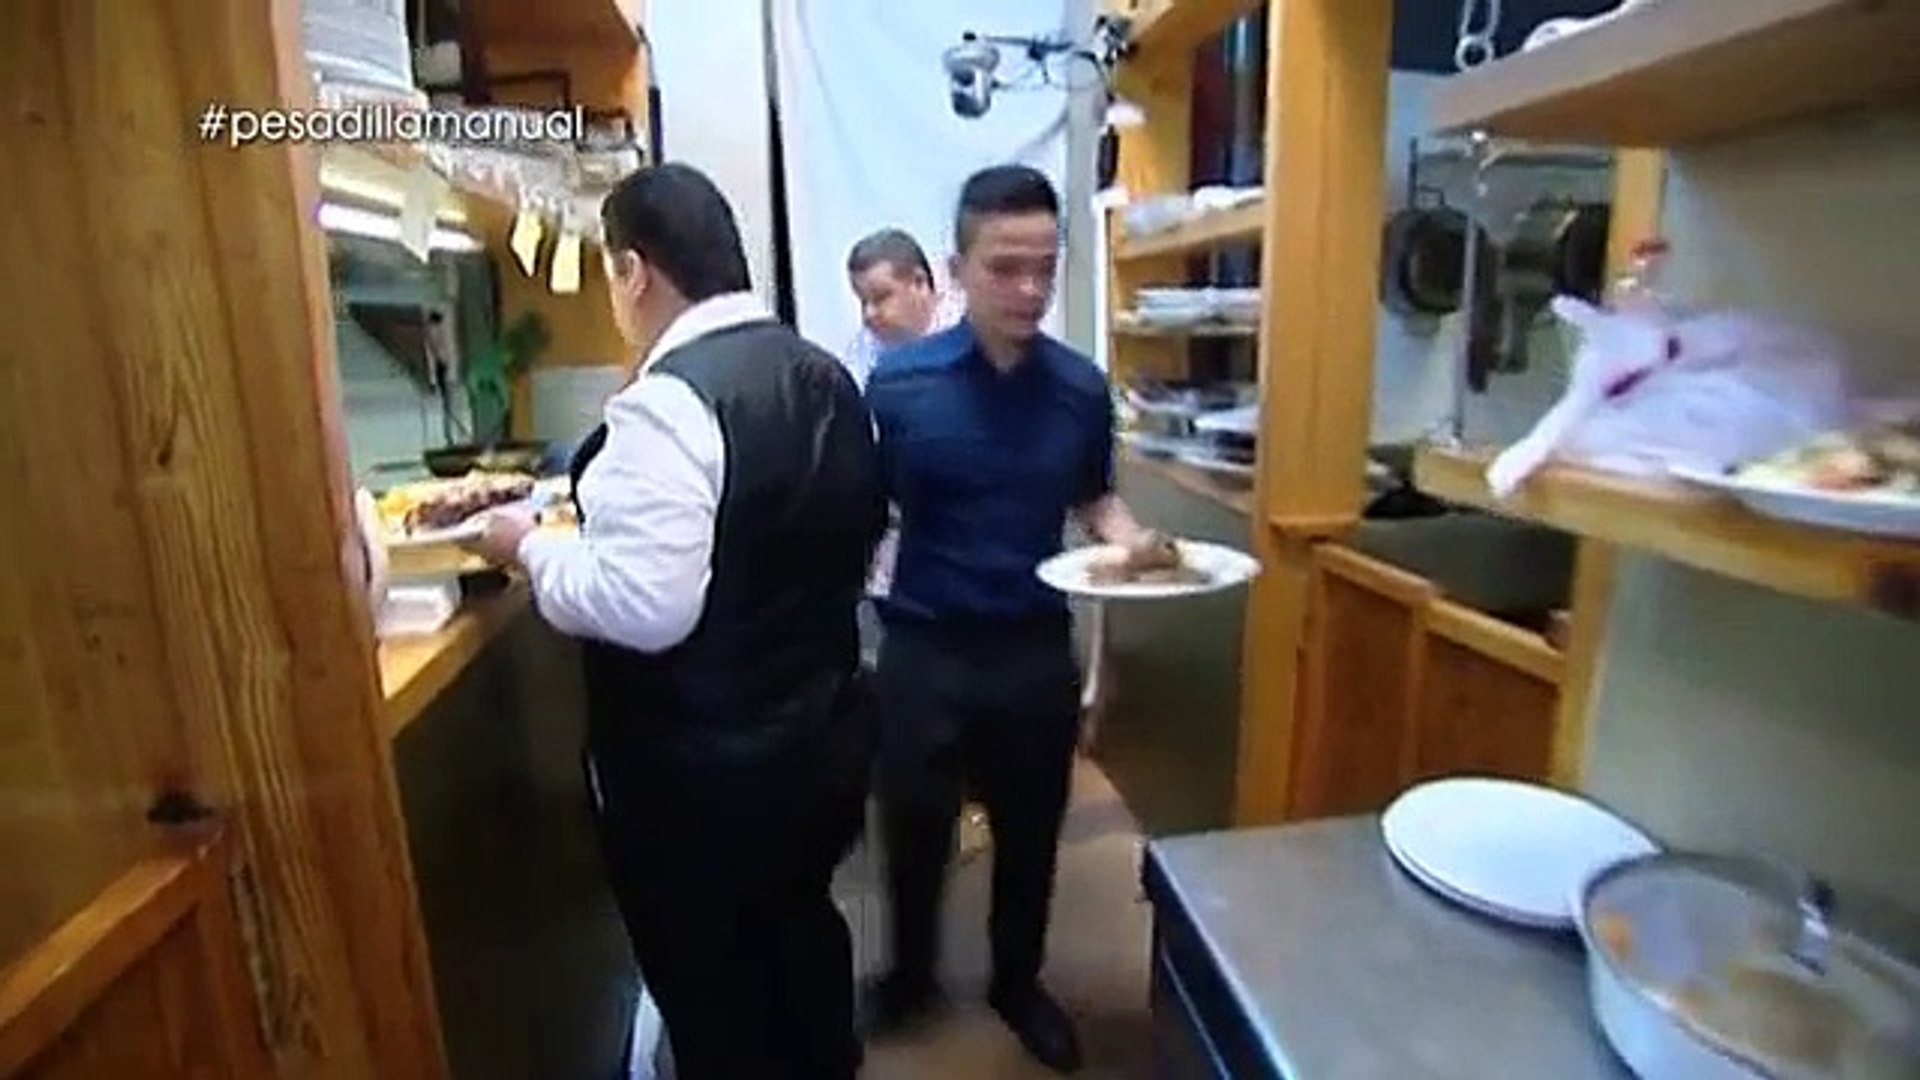 Pesadilla en la cocina' recuerda que hay que tratar con respeto a los  clientes - Vídeo Dailymotion